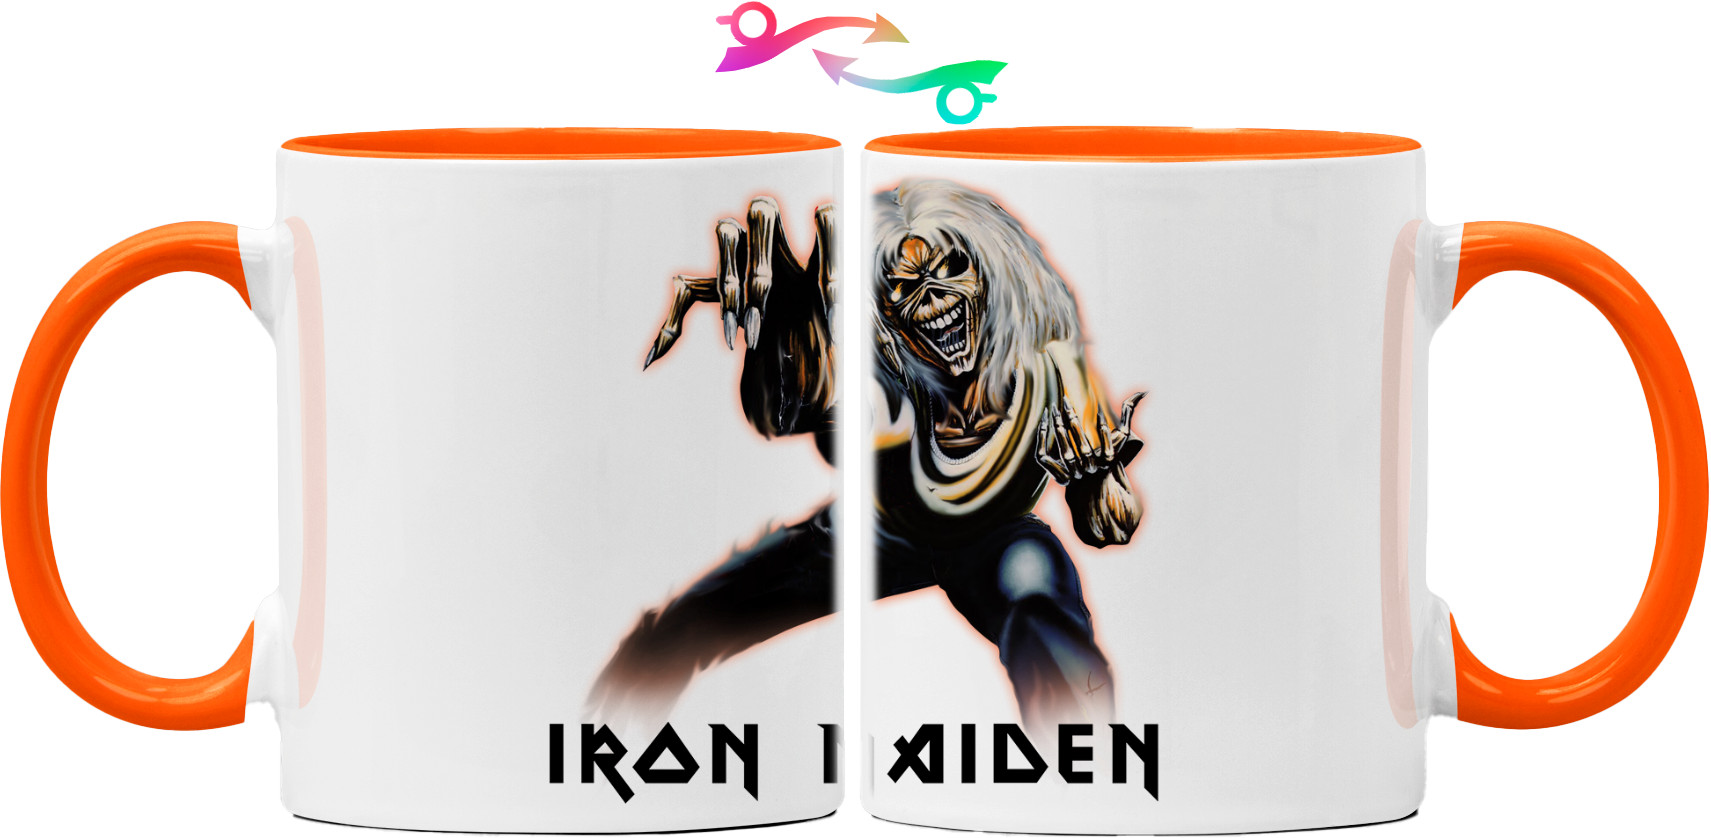 Iron Maiden - Mug - iron maiden 6 - Mfest